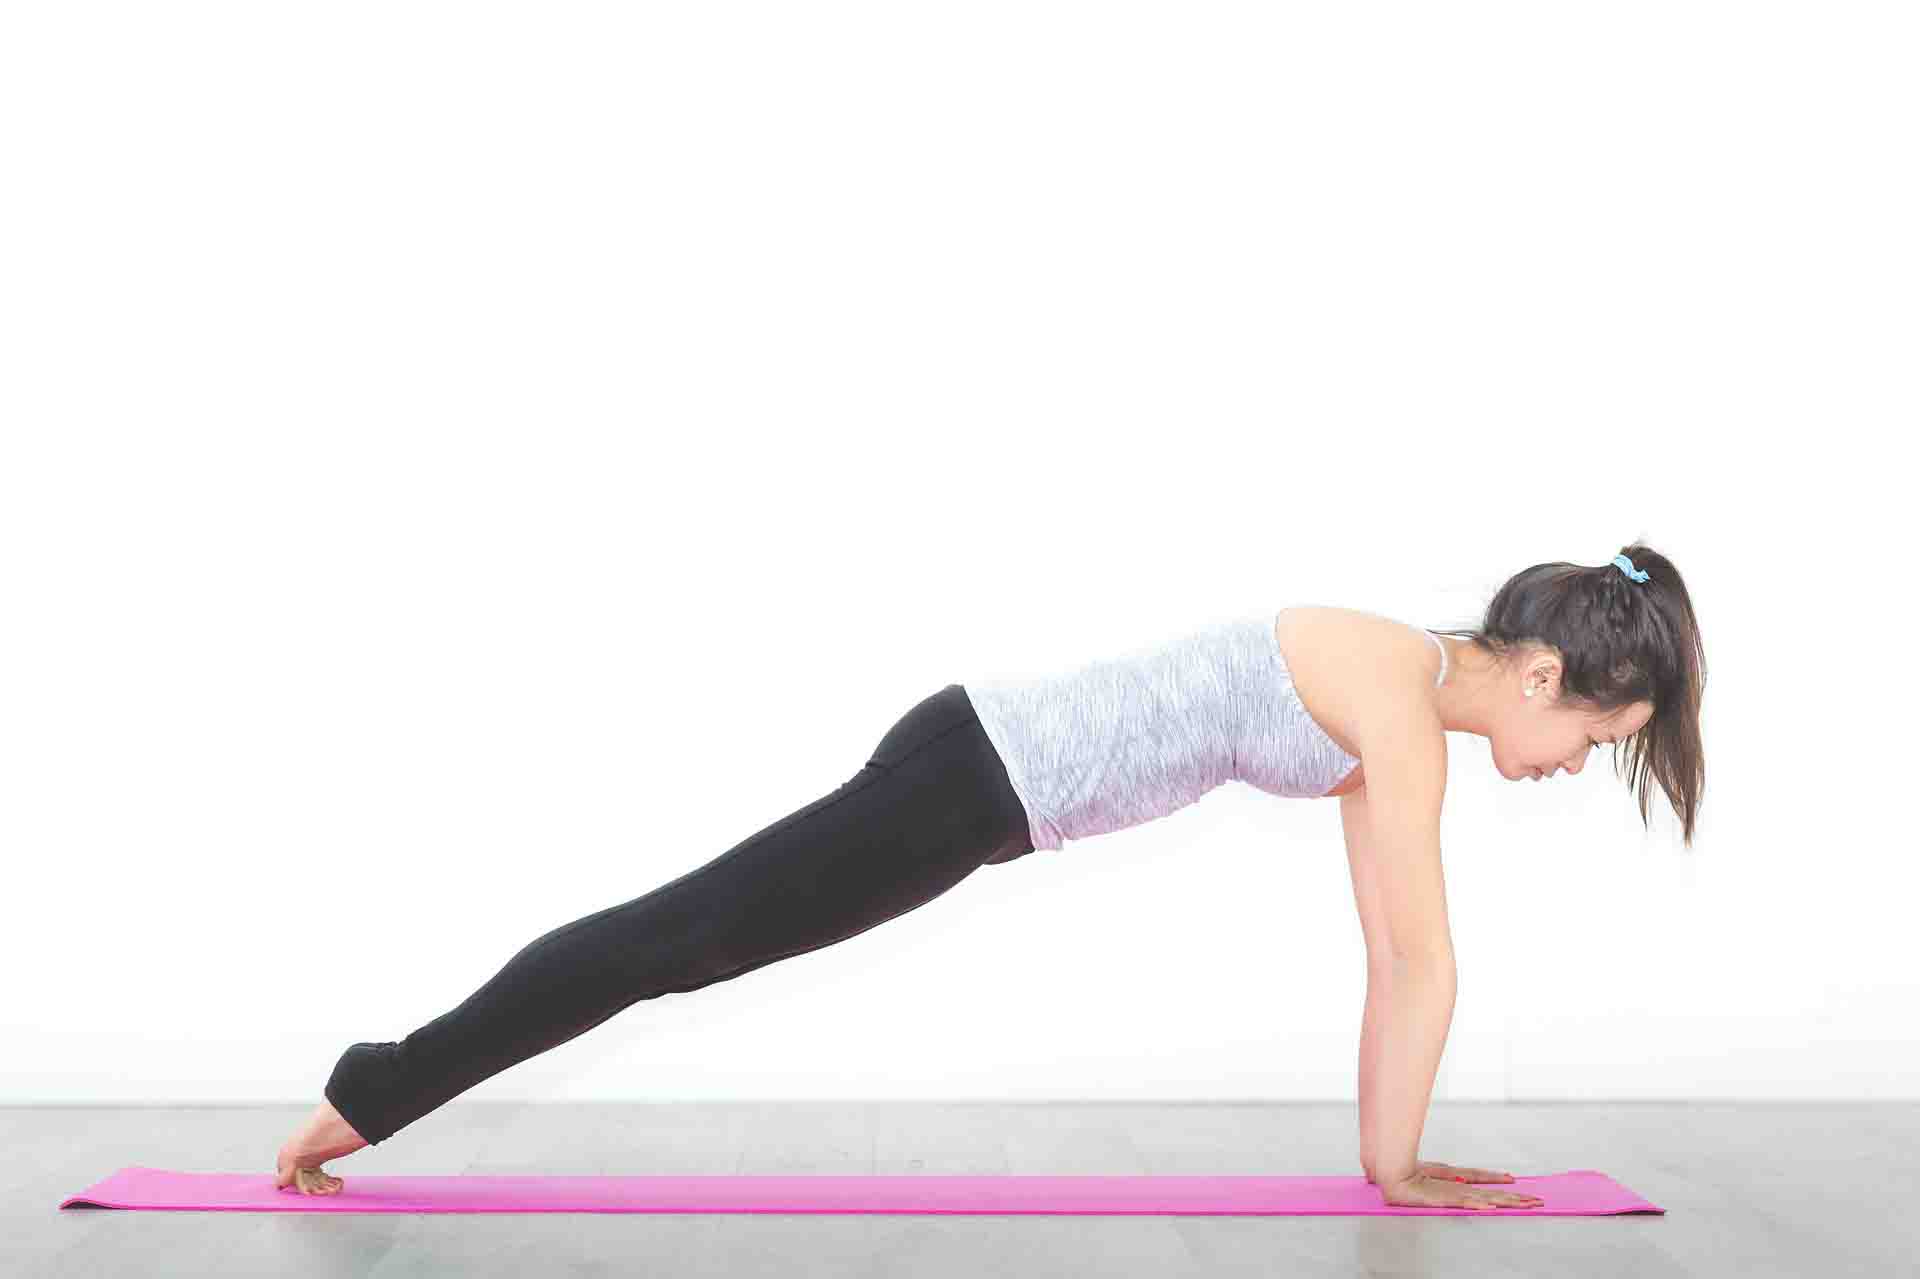 Women doing yoga on a slippery mat